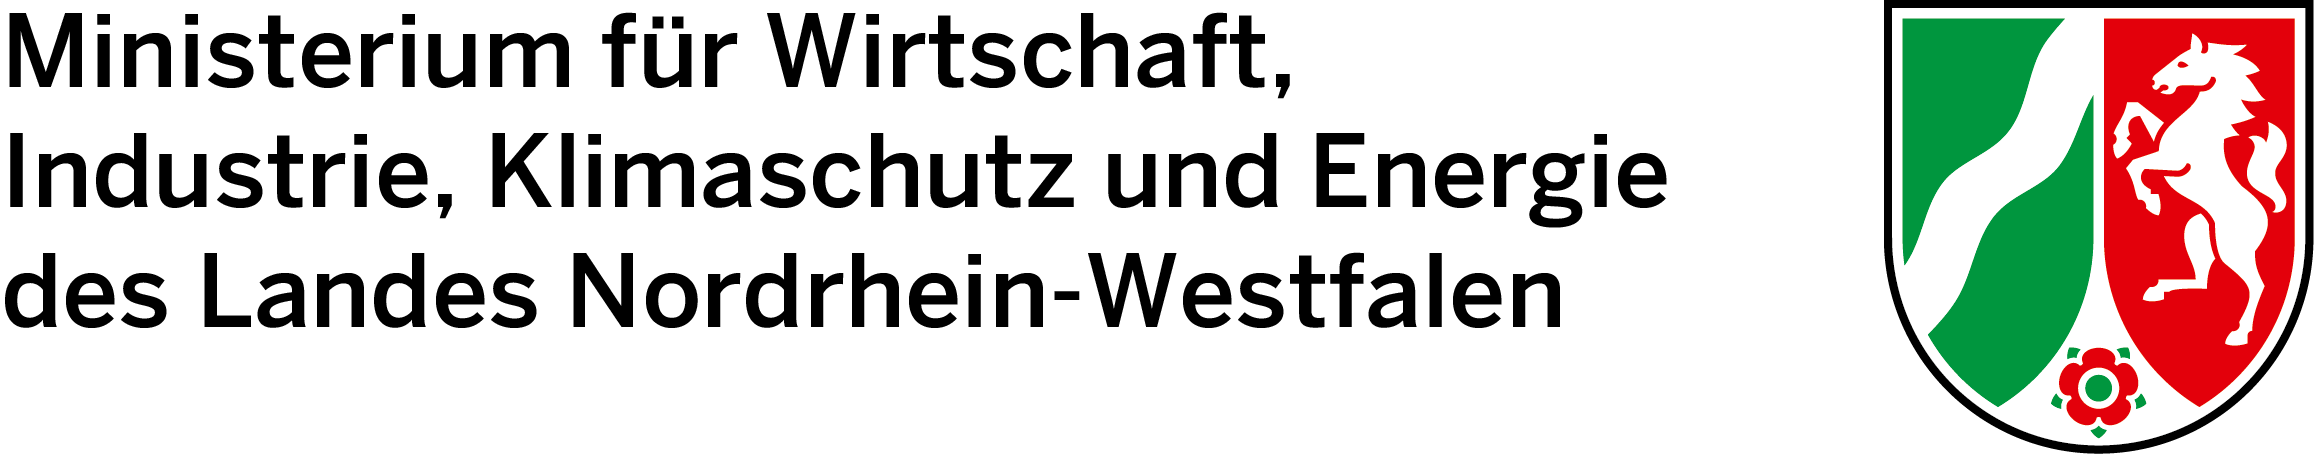 Logotipo del Ministerio de Economía, Industria, Protección del Clima y Energía del Estado de Renania del Norte-Westfalia